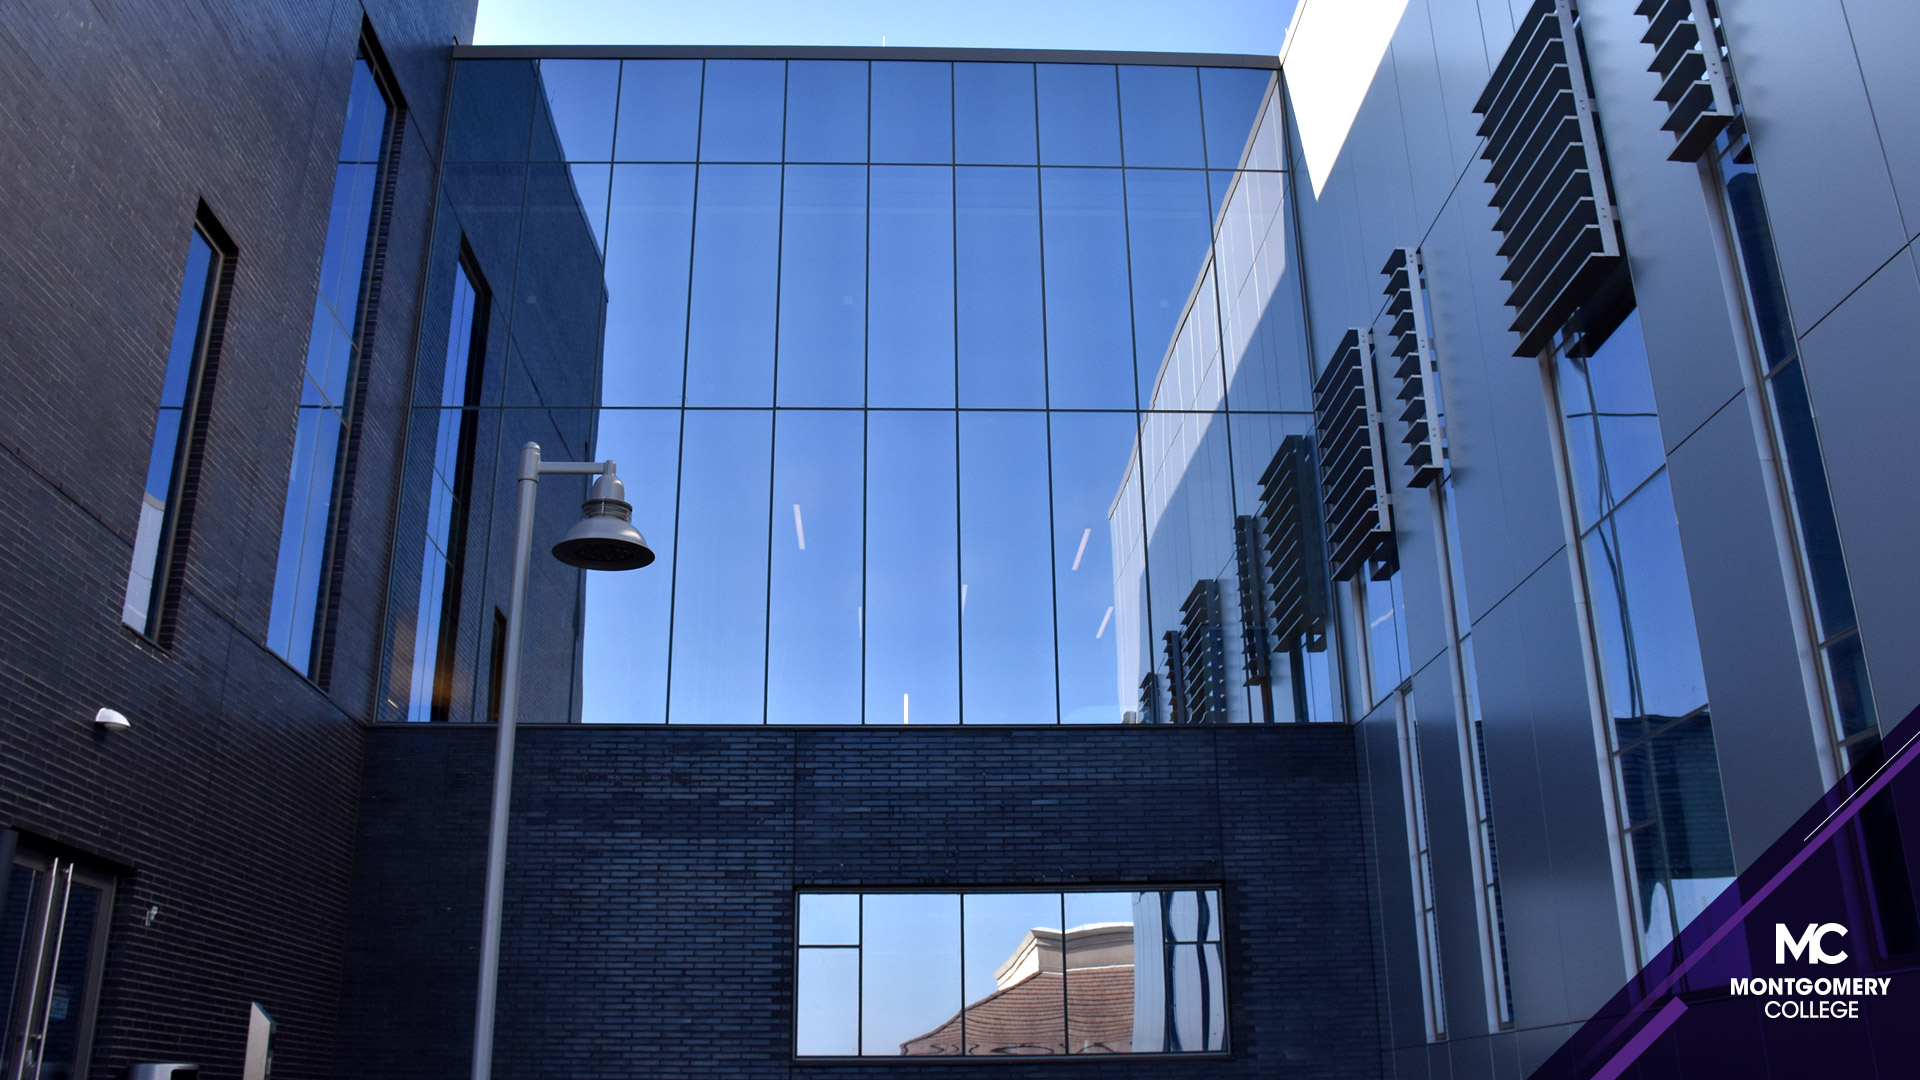 明亮的蓝天反射在日耳曼敦校区学生事务和科学大楼外的镜面玻璃上。